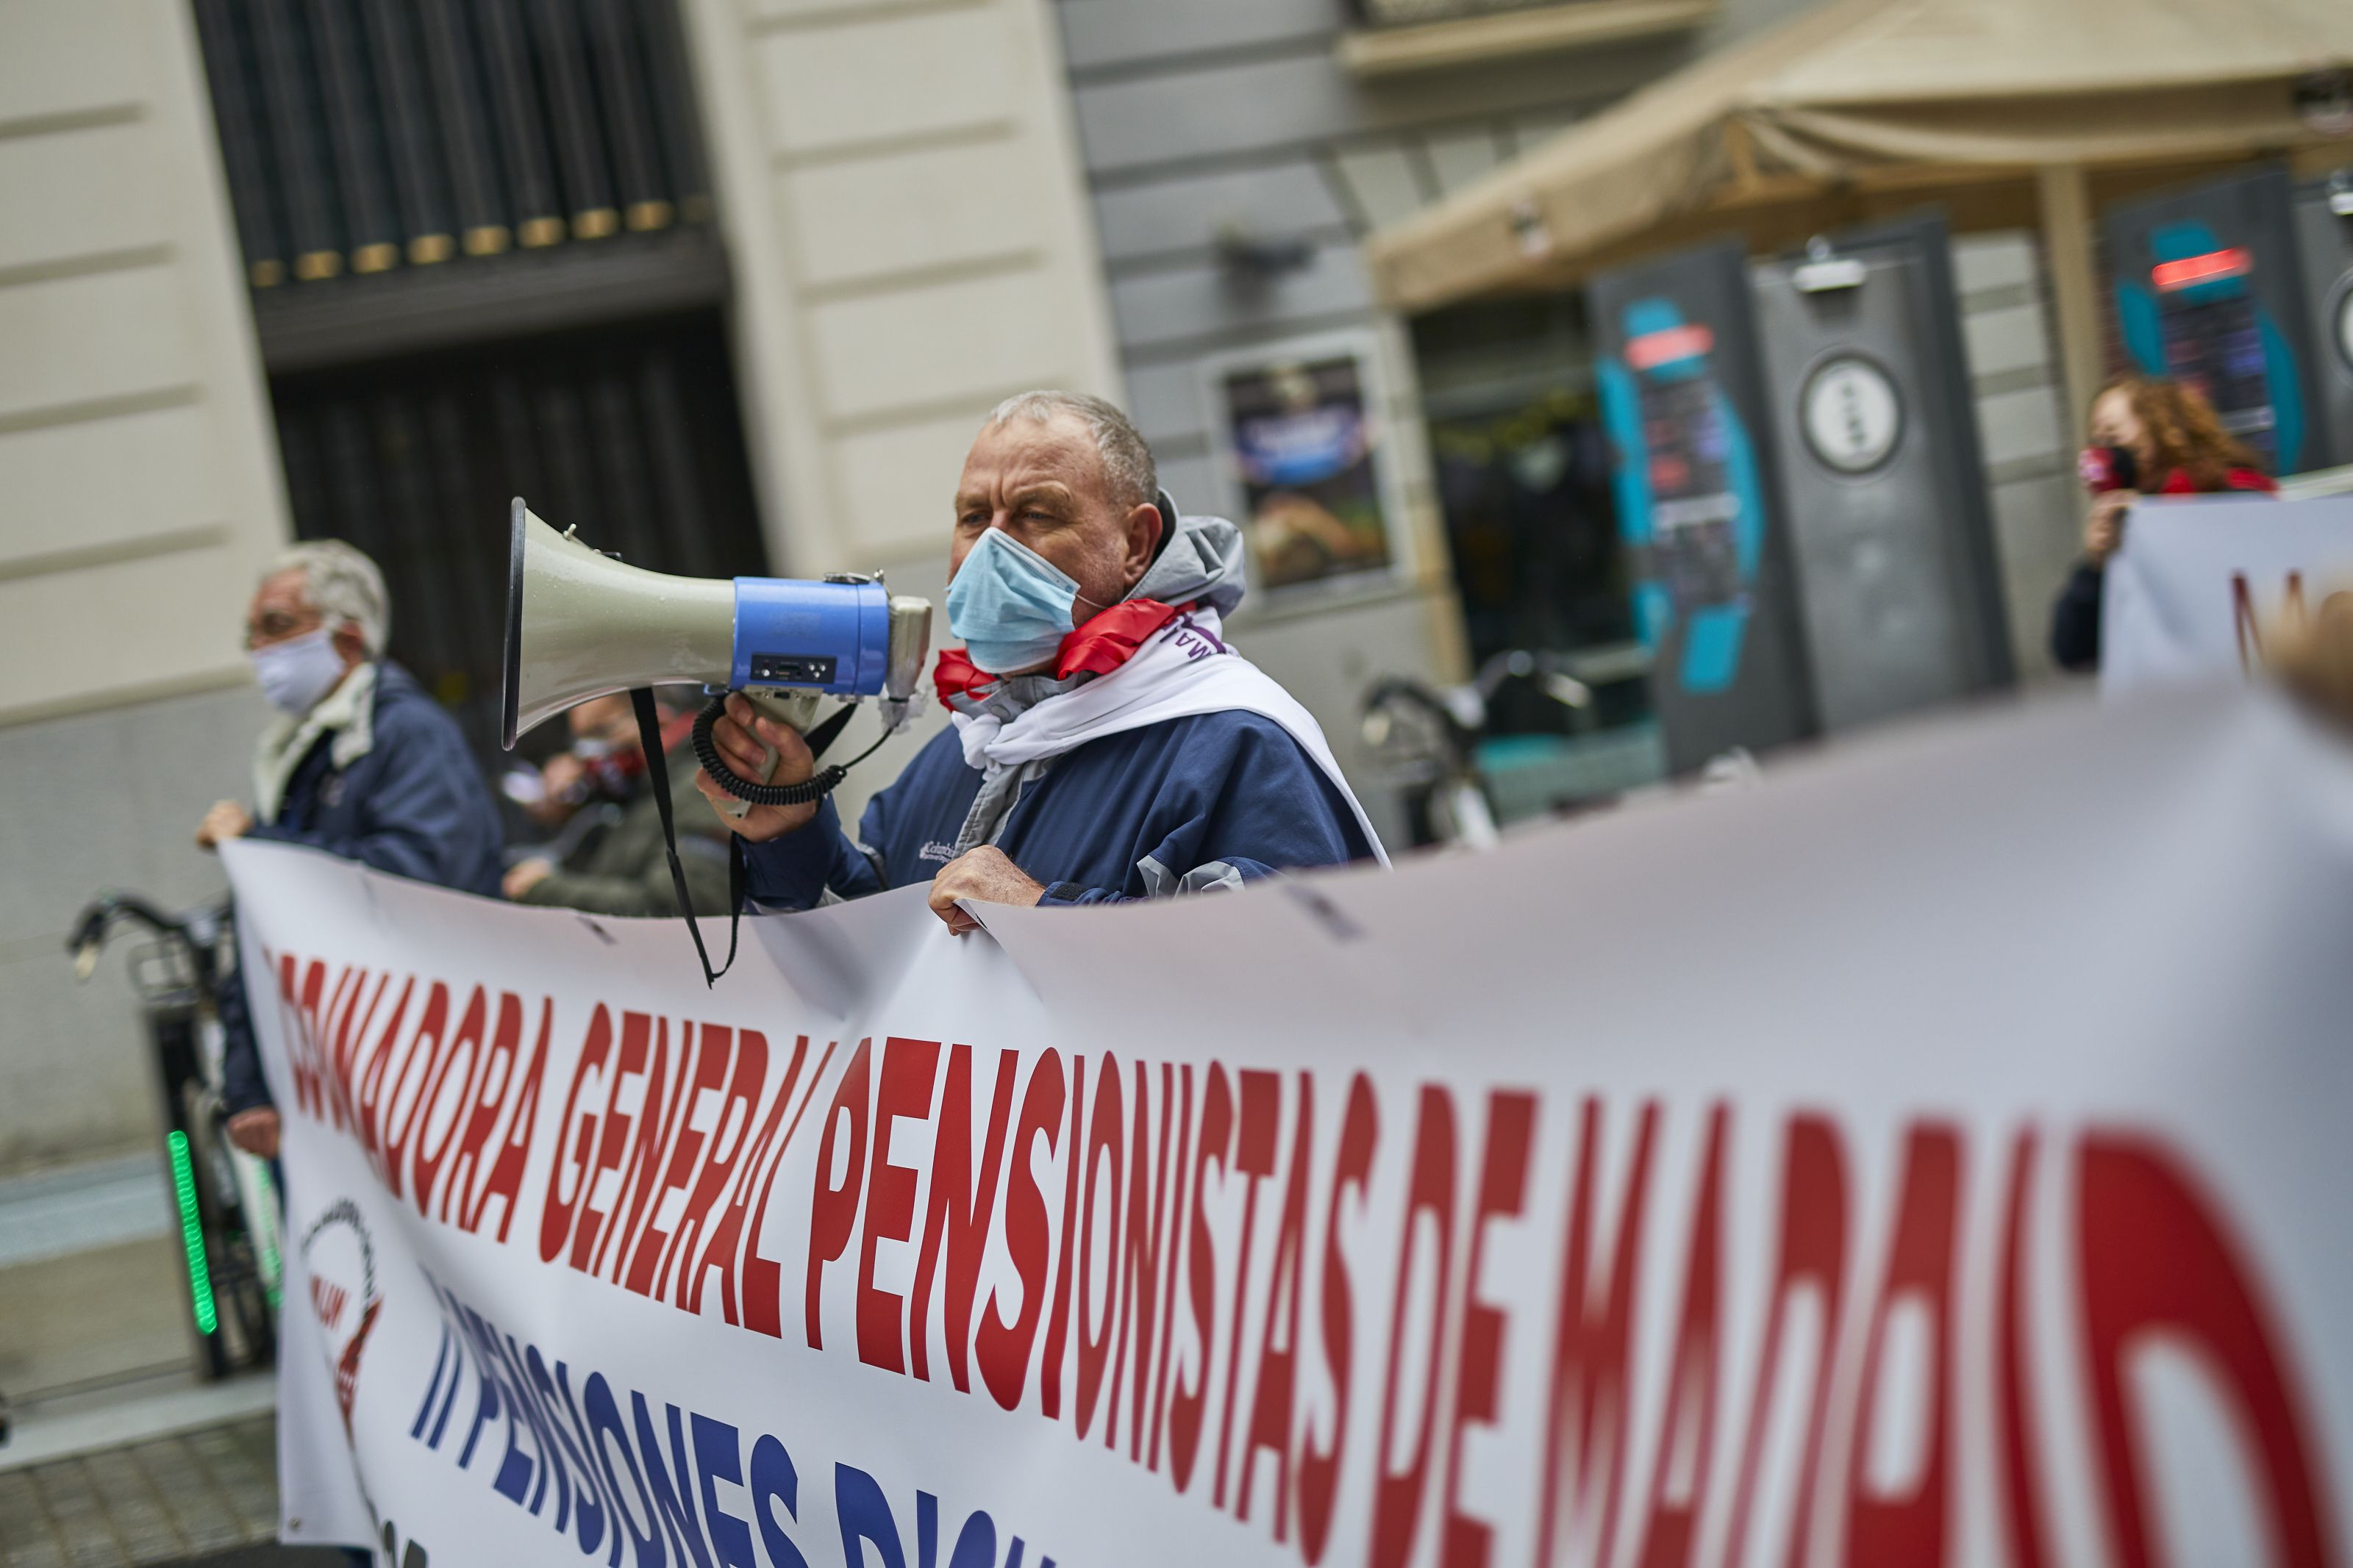 Todo lo que cambia en octubre: manifestaciones de pensionistas, adiós restricciones y tercera dosis Foto: Europa Press